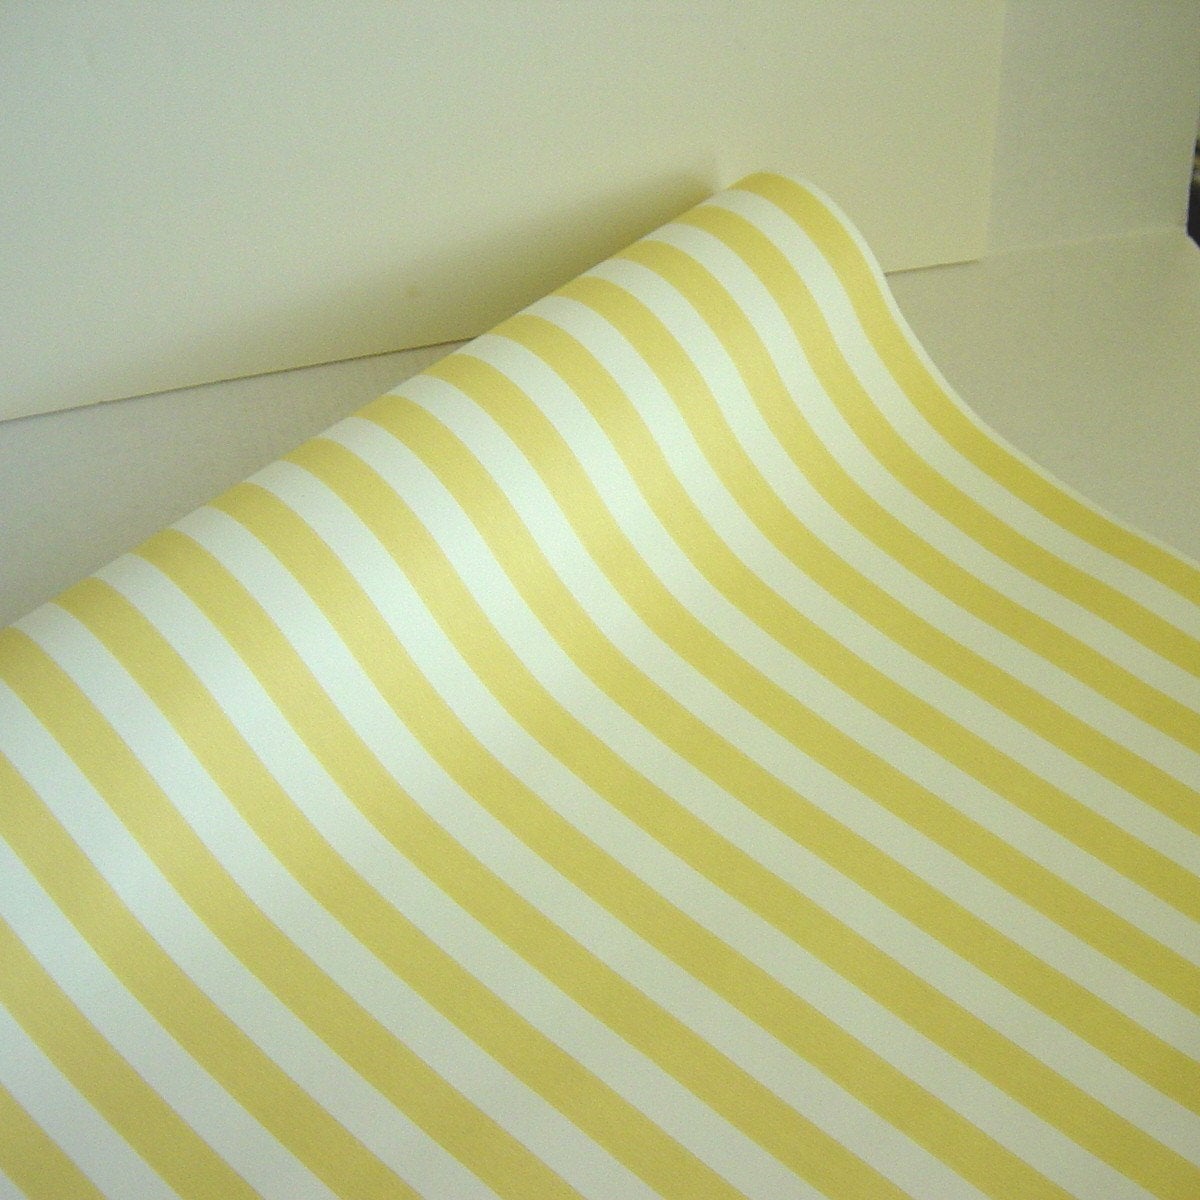 carta da parati gialla e bianca,giallo,tessile,linea,lenzuolo,lenzuola